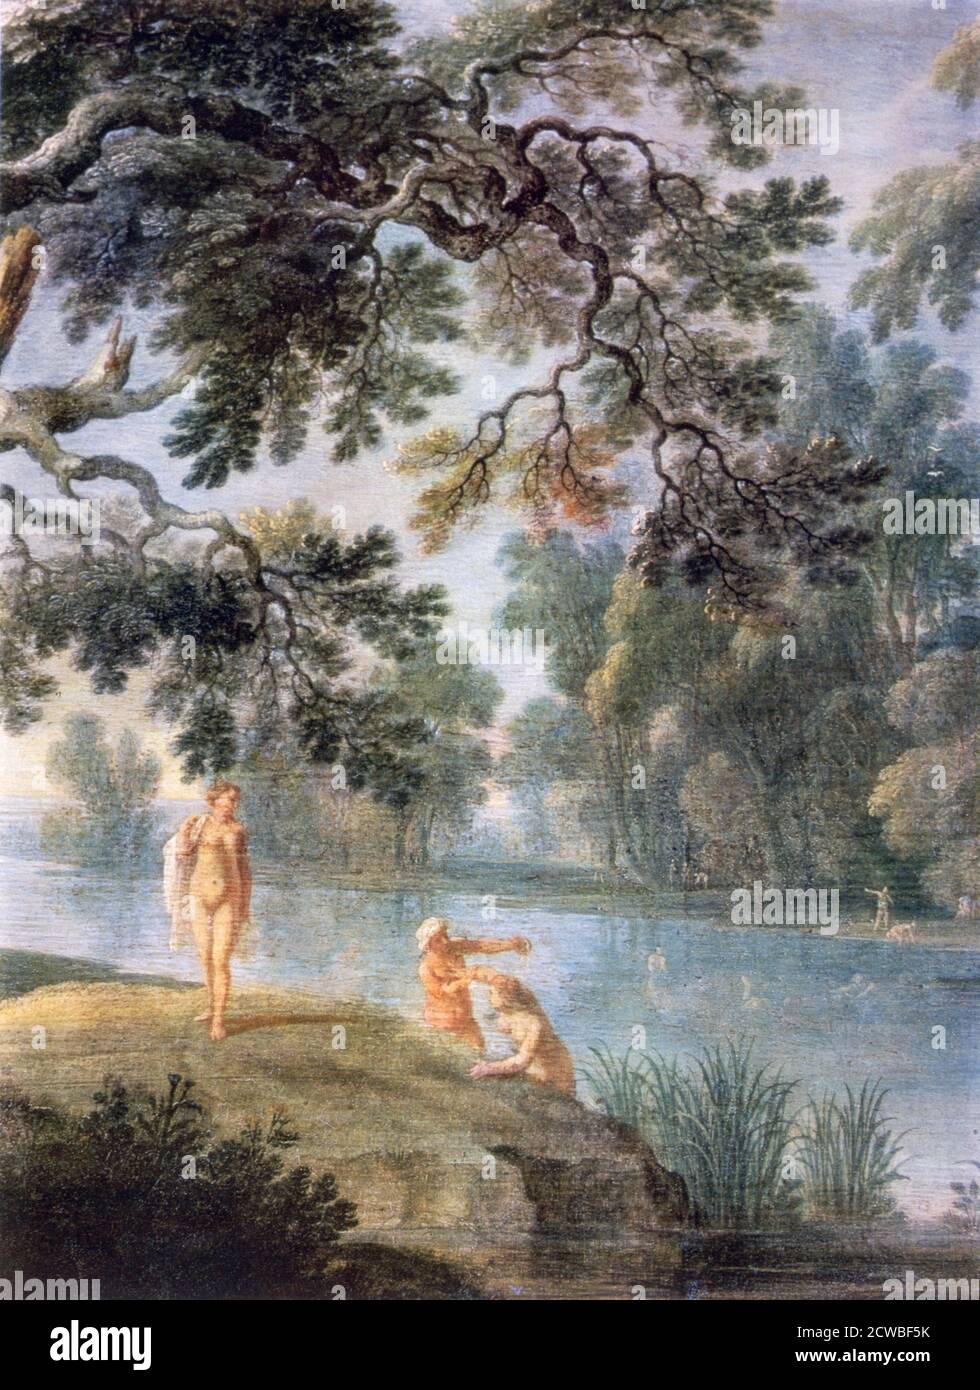 Nymphs Bathing', (Detail), c1620-1652. Künstler: Alexander Keirincx. Alexander Keirincx(1600-1652) war ein flämischer Landschaftsmaler, der für seine bewaldeten Landschaften mit Figuren sowie seine Gemälde englischer Burgen und Landhäuser bekannt ist. Stockfoto